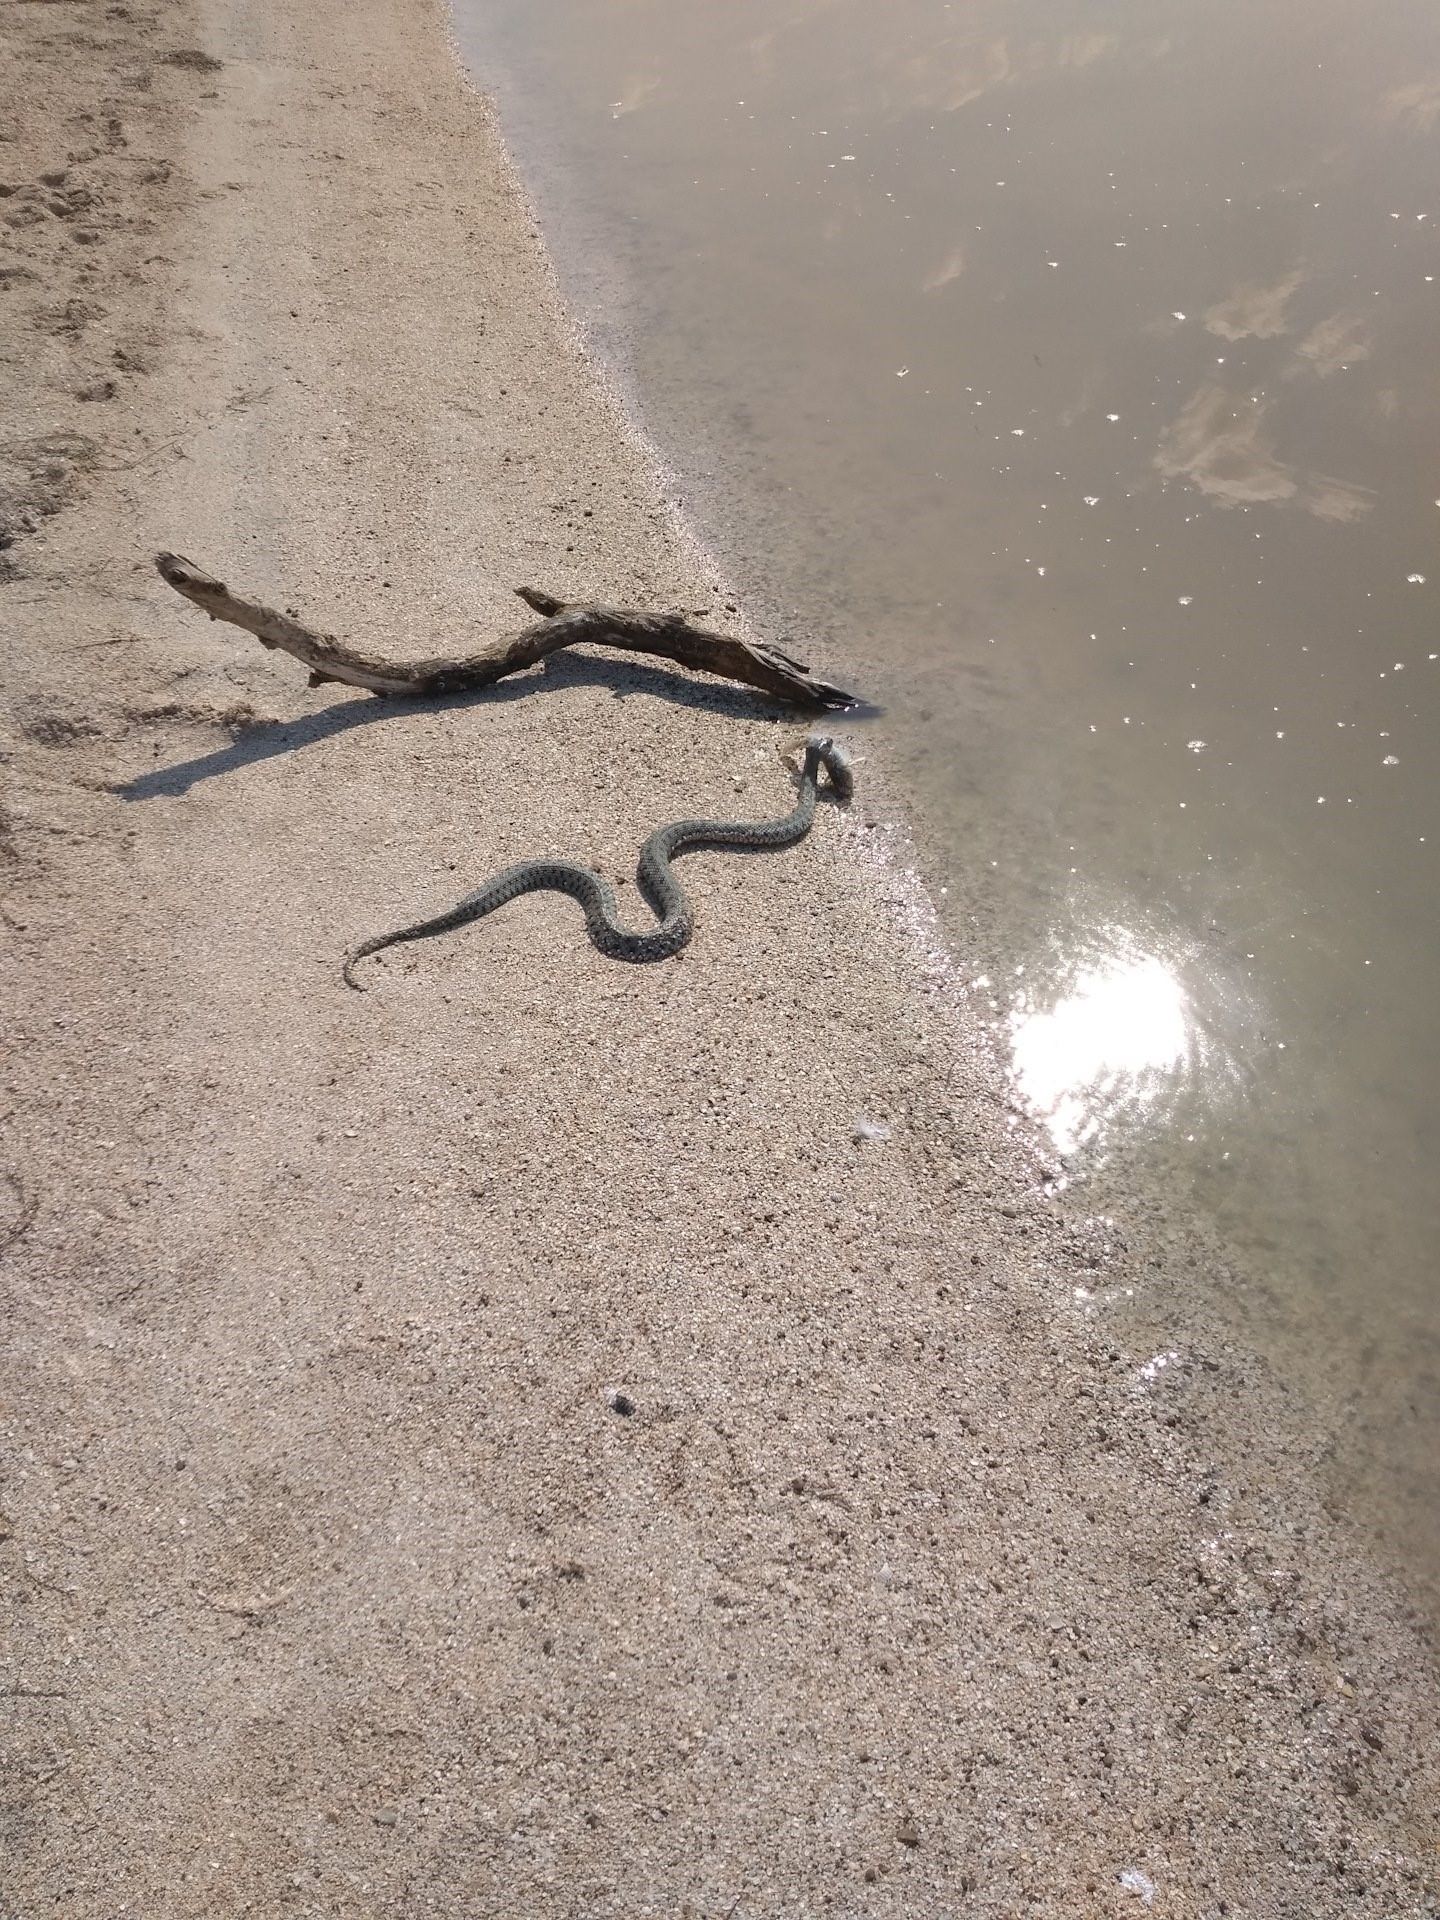 Змеи азовского моря фото и названия